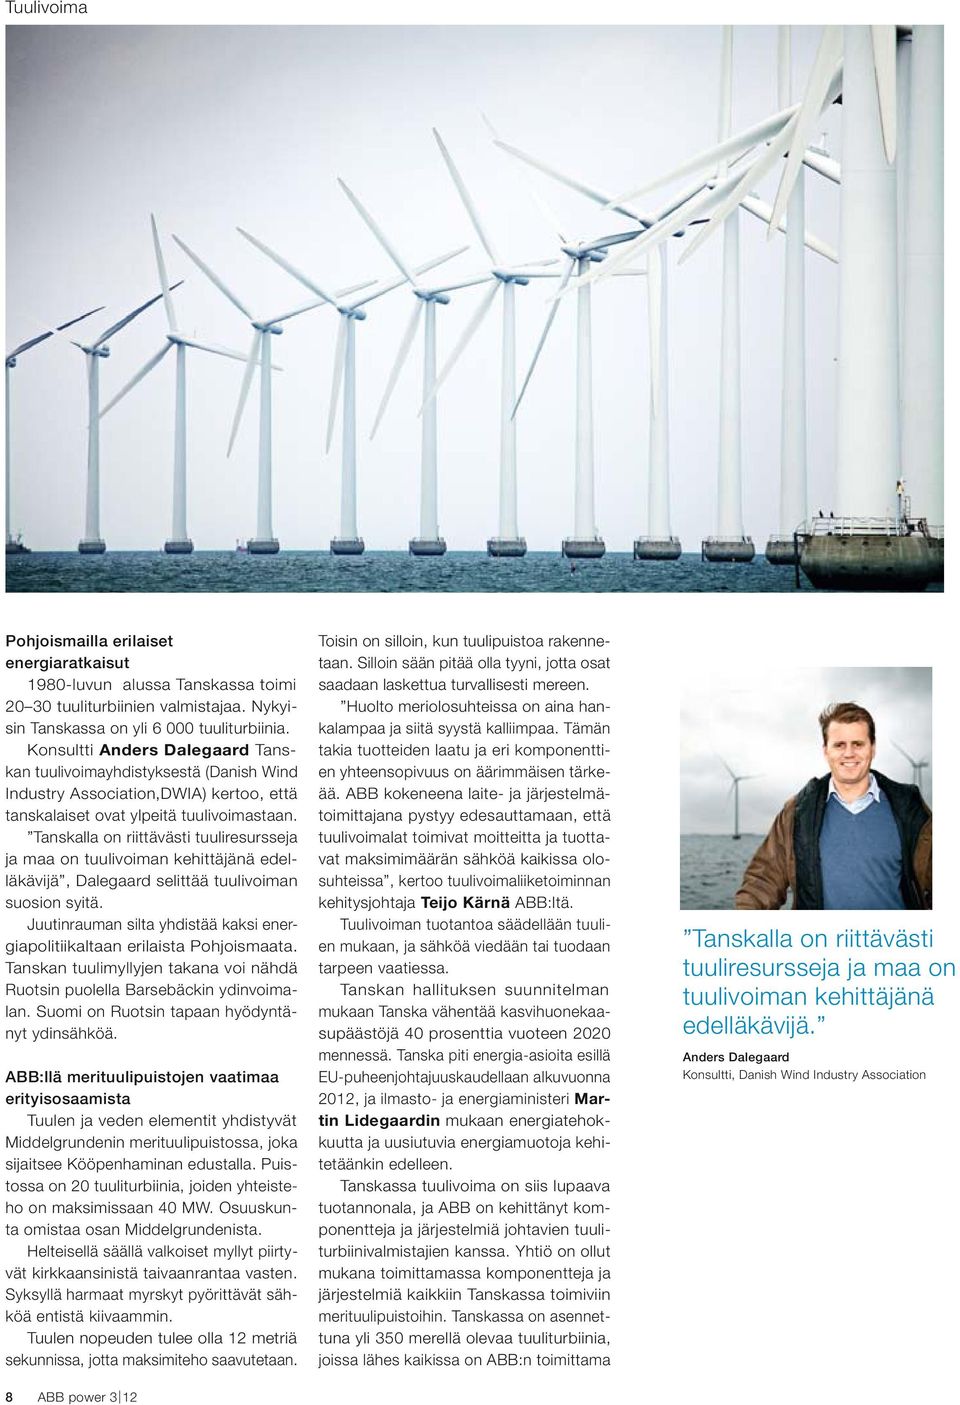 Tanskalla on riittävästi tuuliresursseja ja maa on tuulivoiman kehittäjänä edelläkävijä, Dalegaard selittää tuulivoiman suosion syitä.